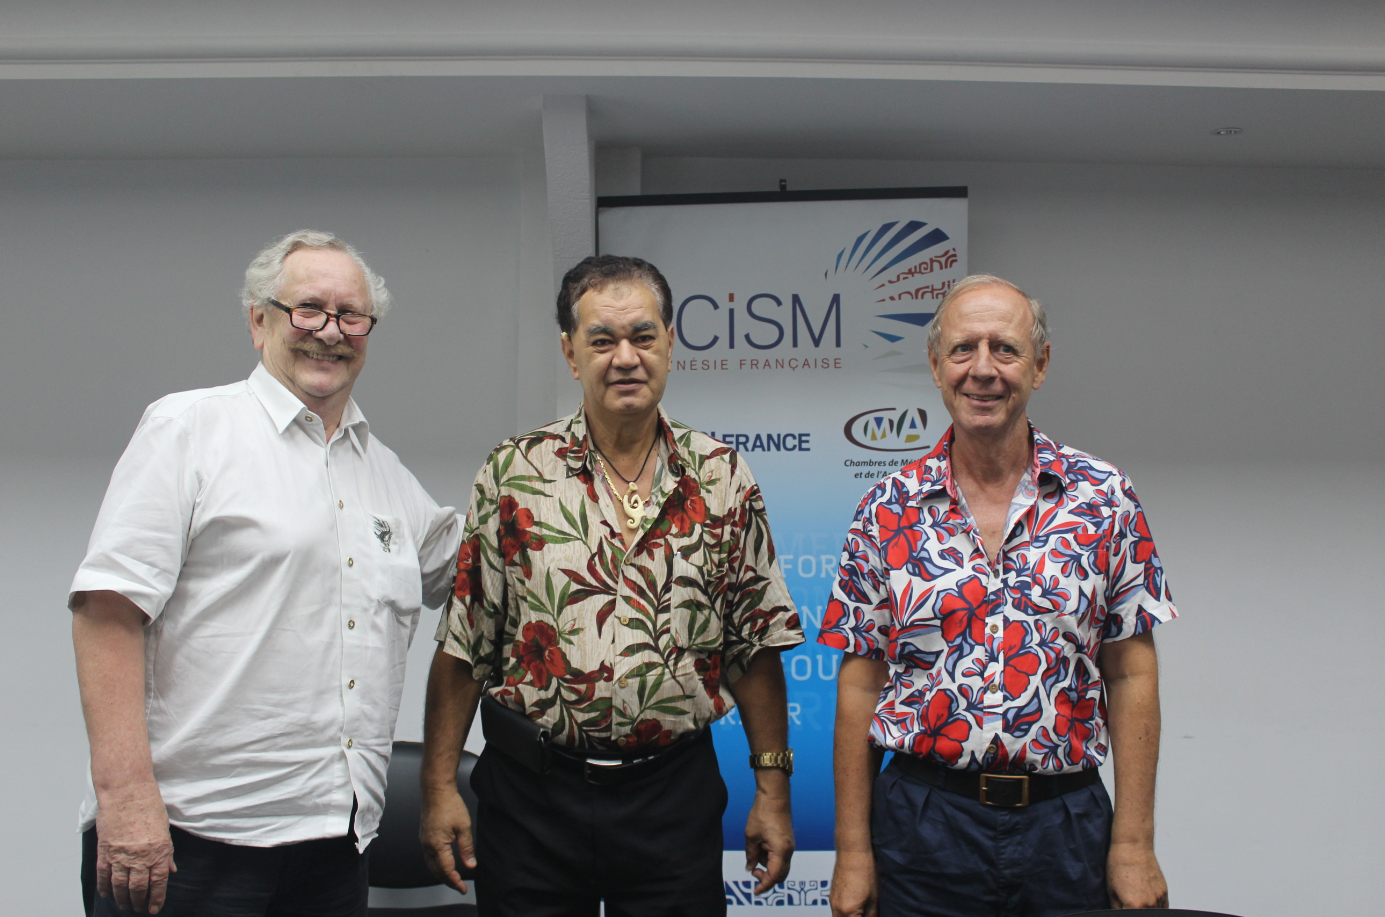 De gauche à droite : Gérard Kochersperger, vice-président de l’Institut économique de Tahiti, Stéphane Chin Loy, président de la CCISM et Patrick Fincker, co-président de l’Institut économique de Tahiti.